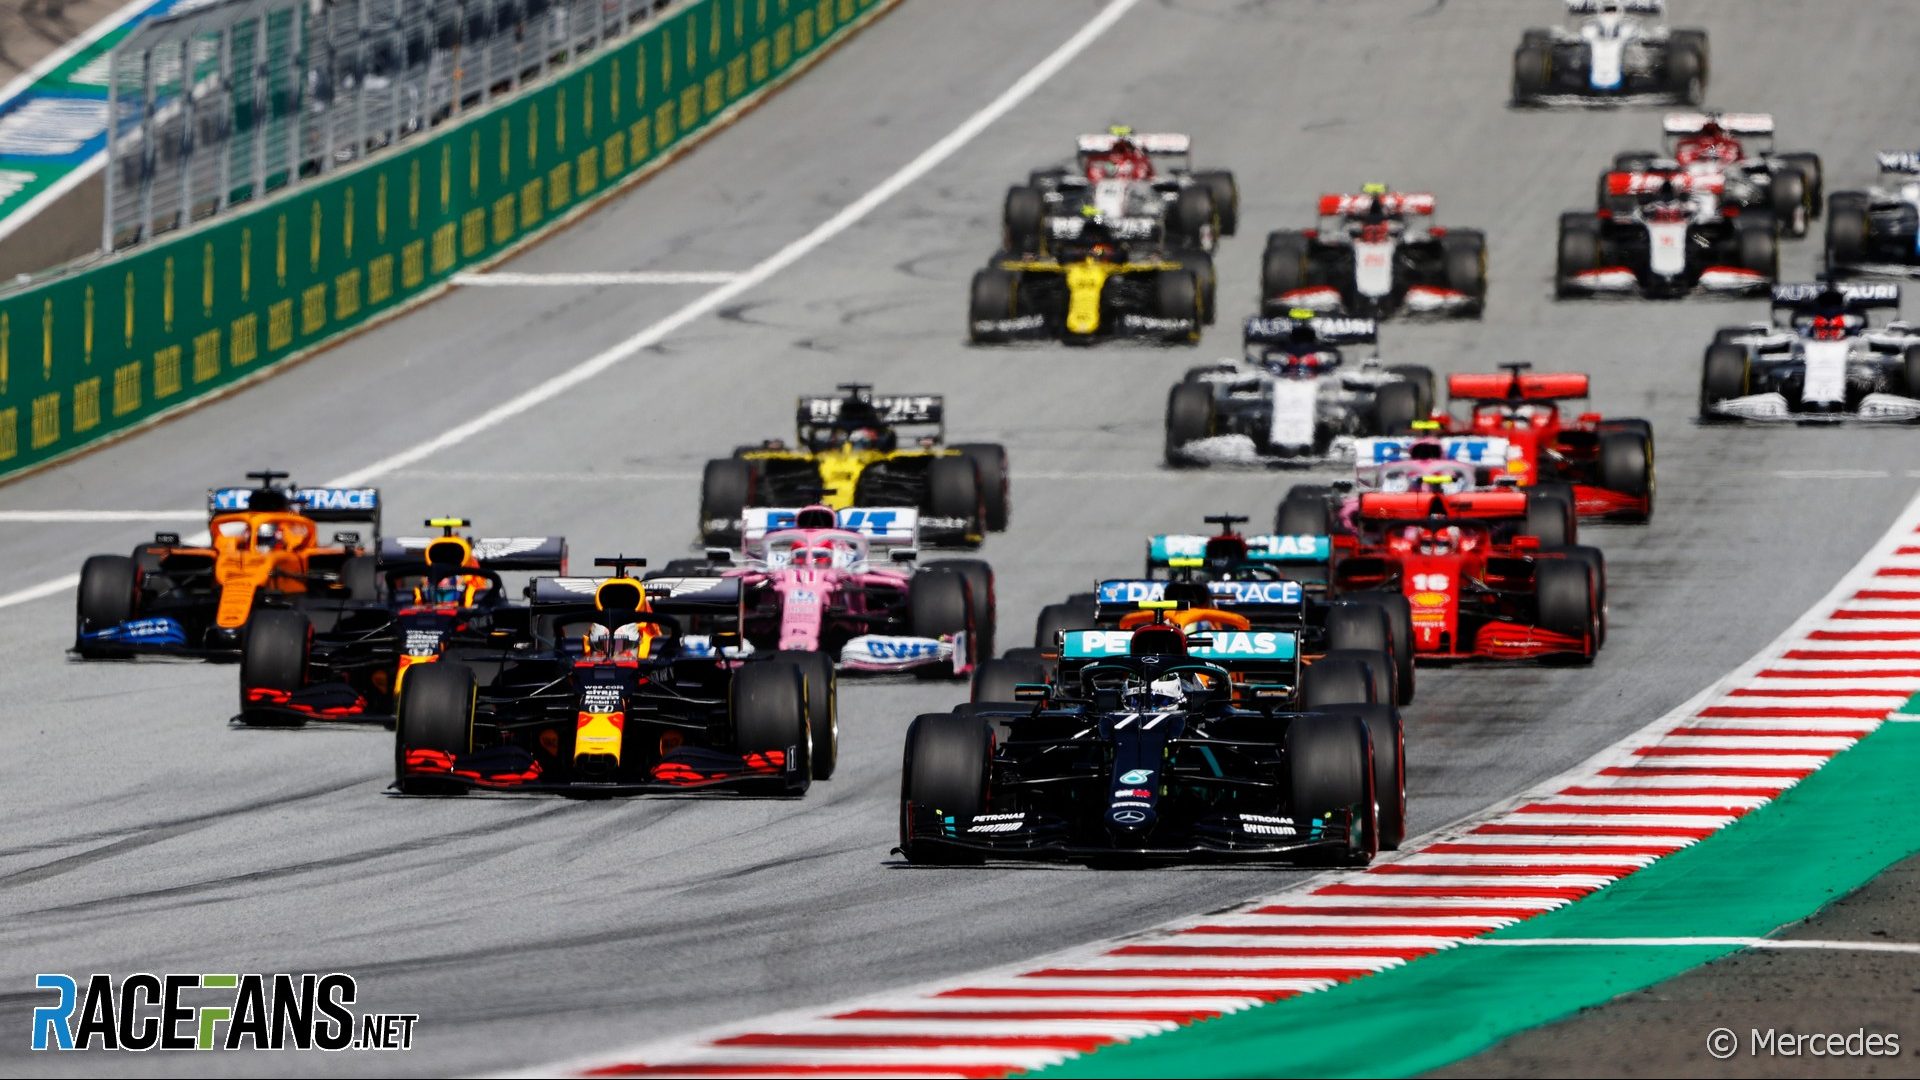 Incense anger tear down 2020 F1 calendar: Formula 1 grand prix schedule details - RaceFans